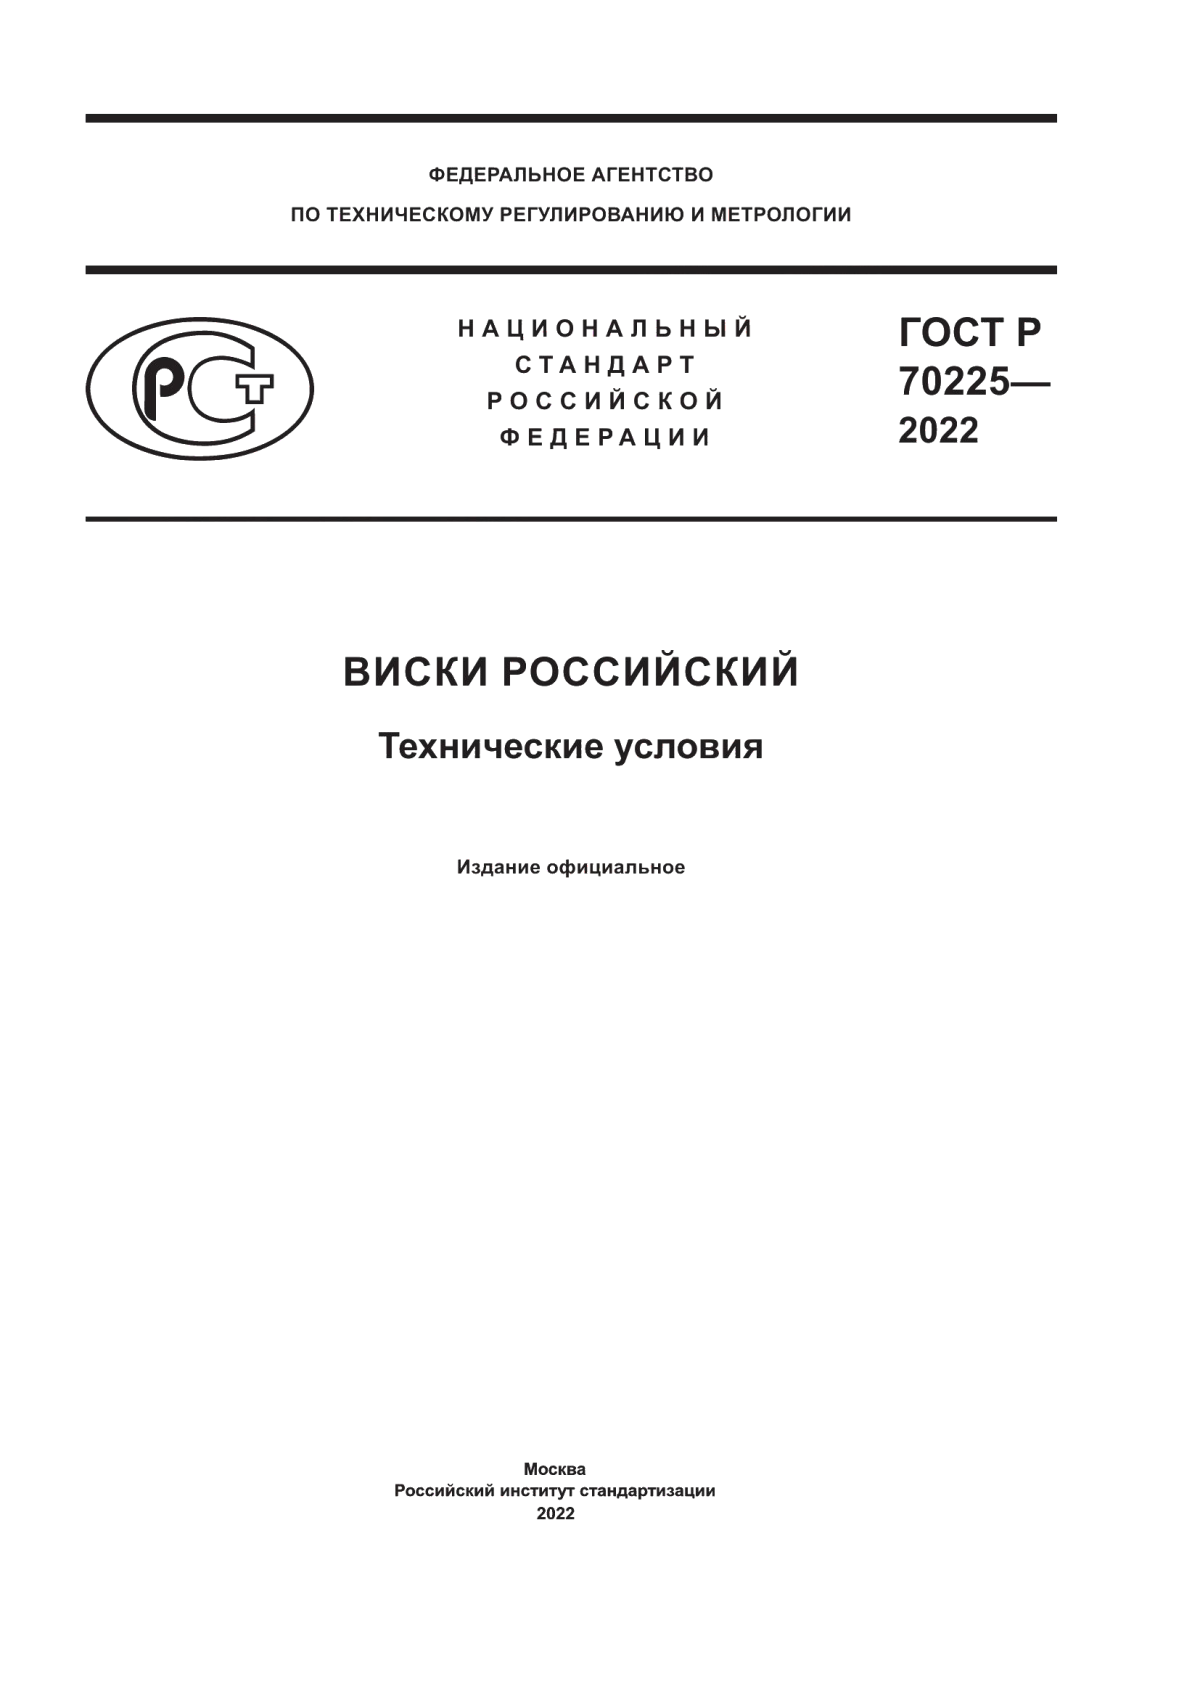 ГОСТ Р 70225-2022 Виски российский. Технические условия